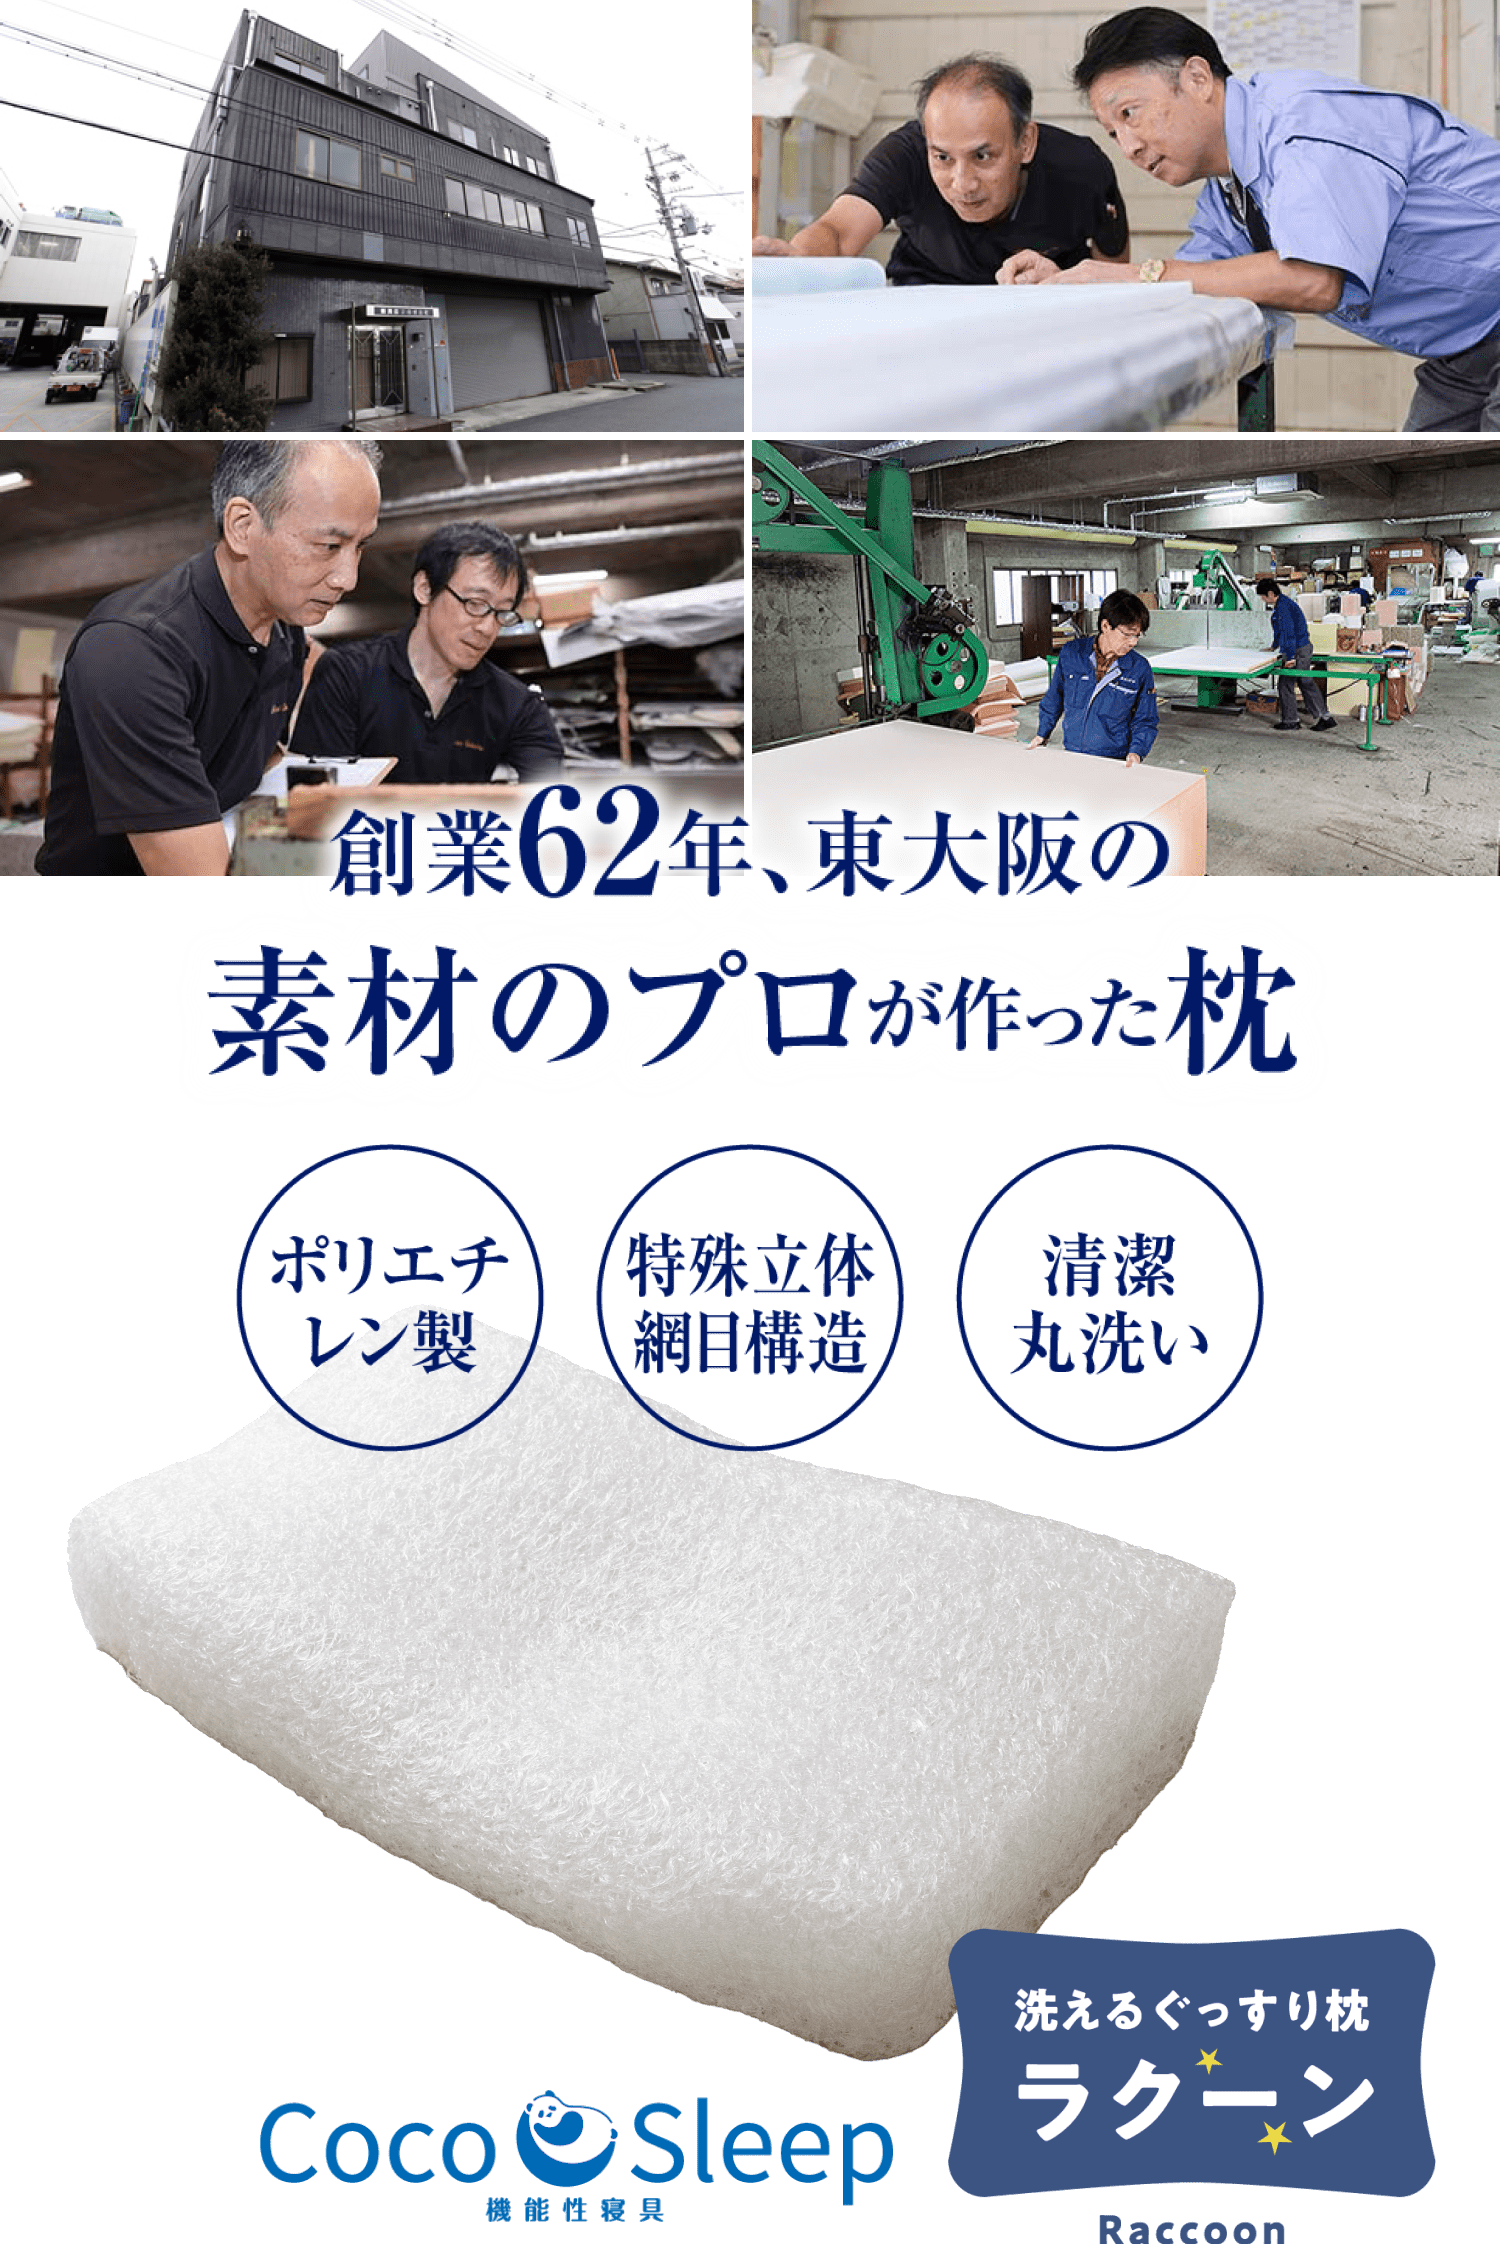 創業62年、東大阪の素材のプロが作った枕。Coco sleep 洗えるぐっすり枕「ラクーン」。・清潔丸洗い・特殊立体網目構造・ポリエチレン製